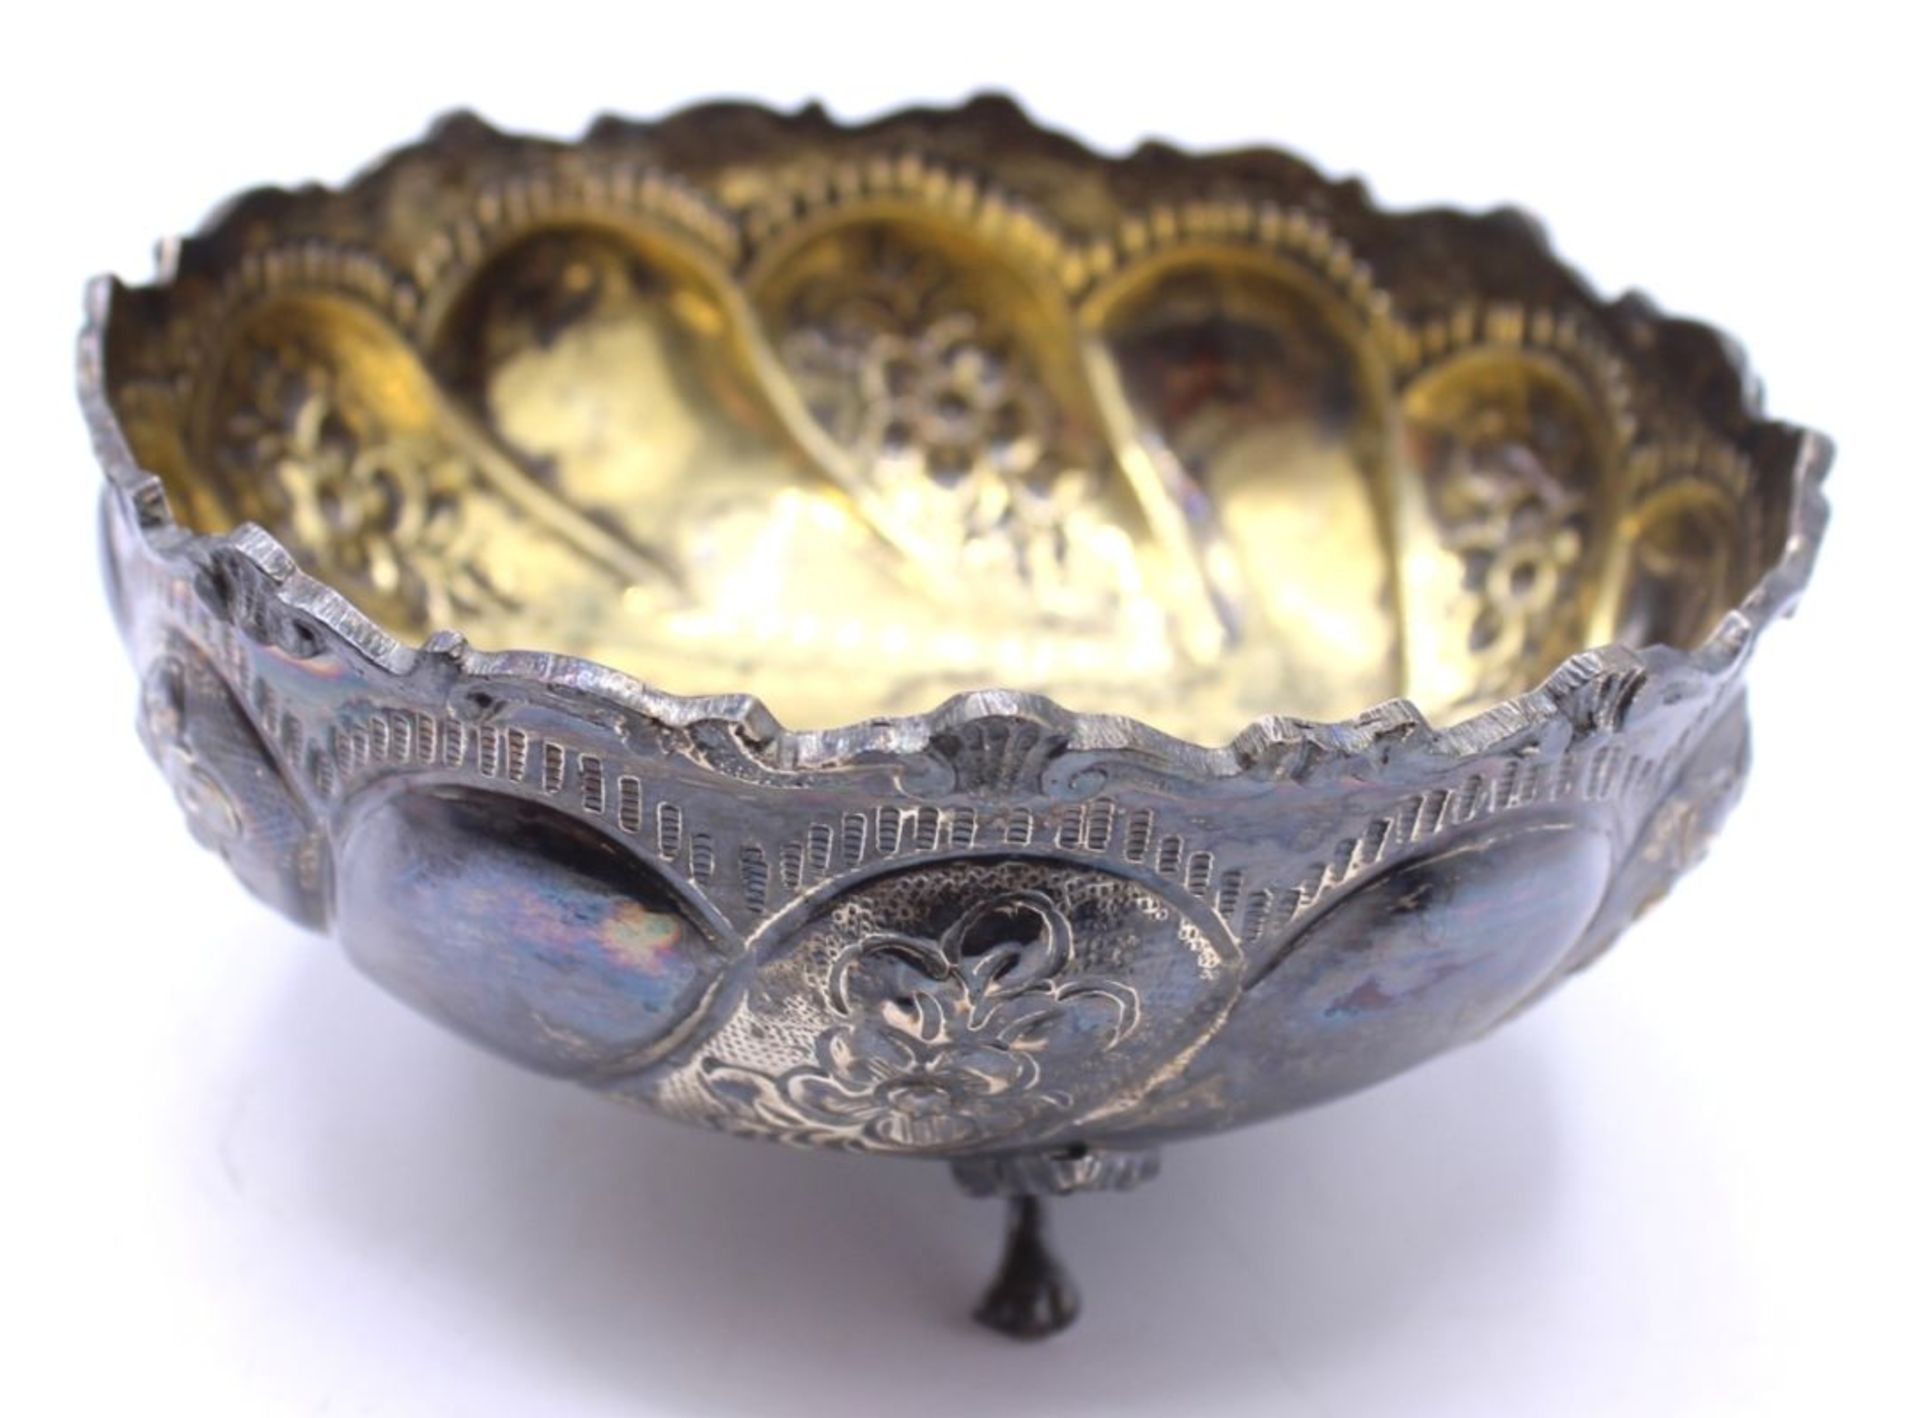 Silberschale - XX.Jahrhundert Silber gest. 800, Marke SAR, runde Form mit reliefiertem floralem